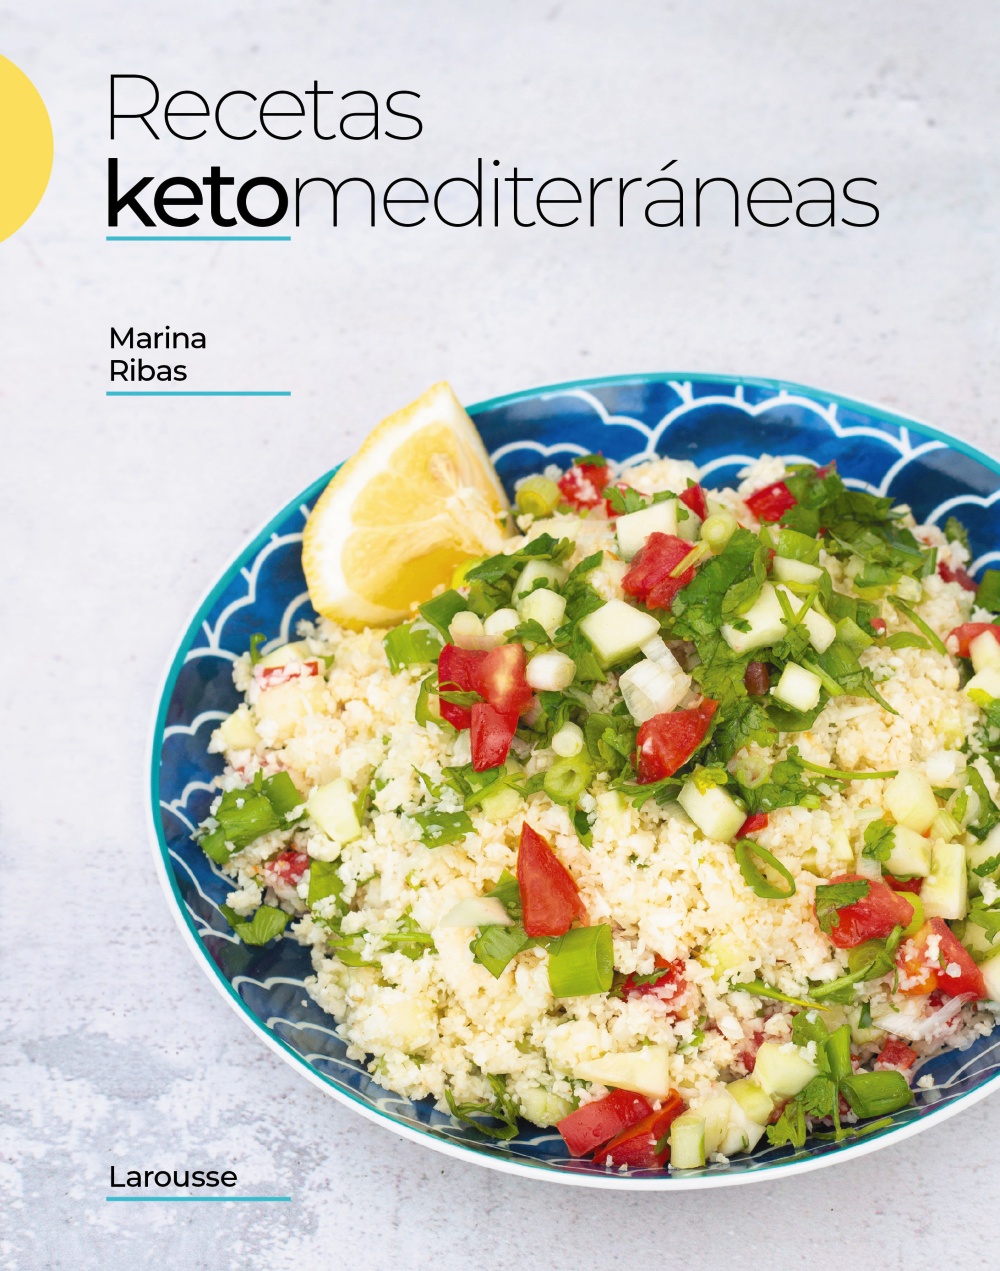 Un libro de recetas keto elaborado con productos mediterráneos